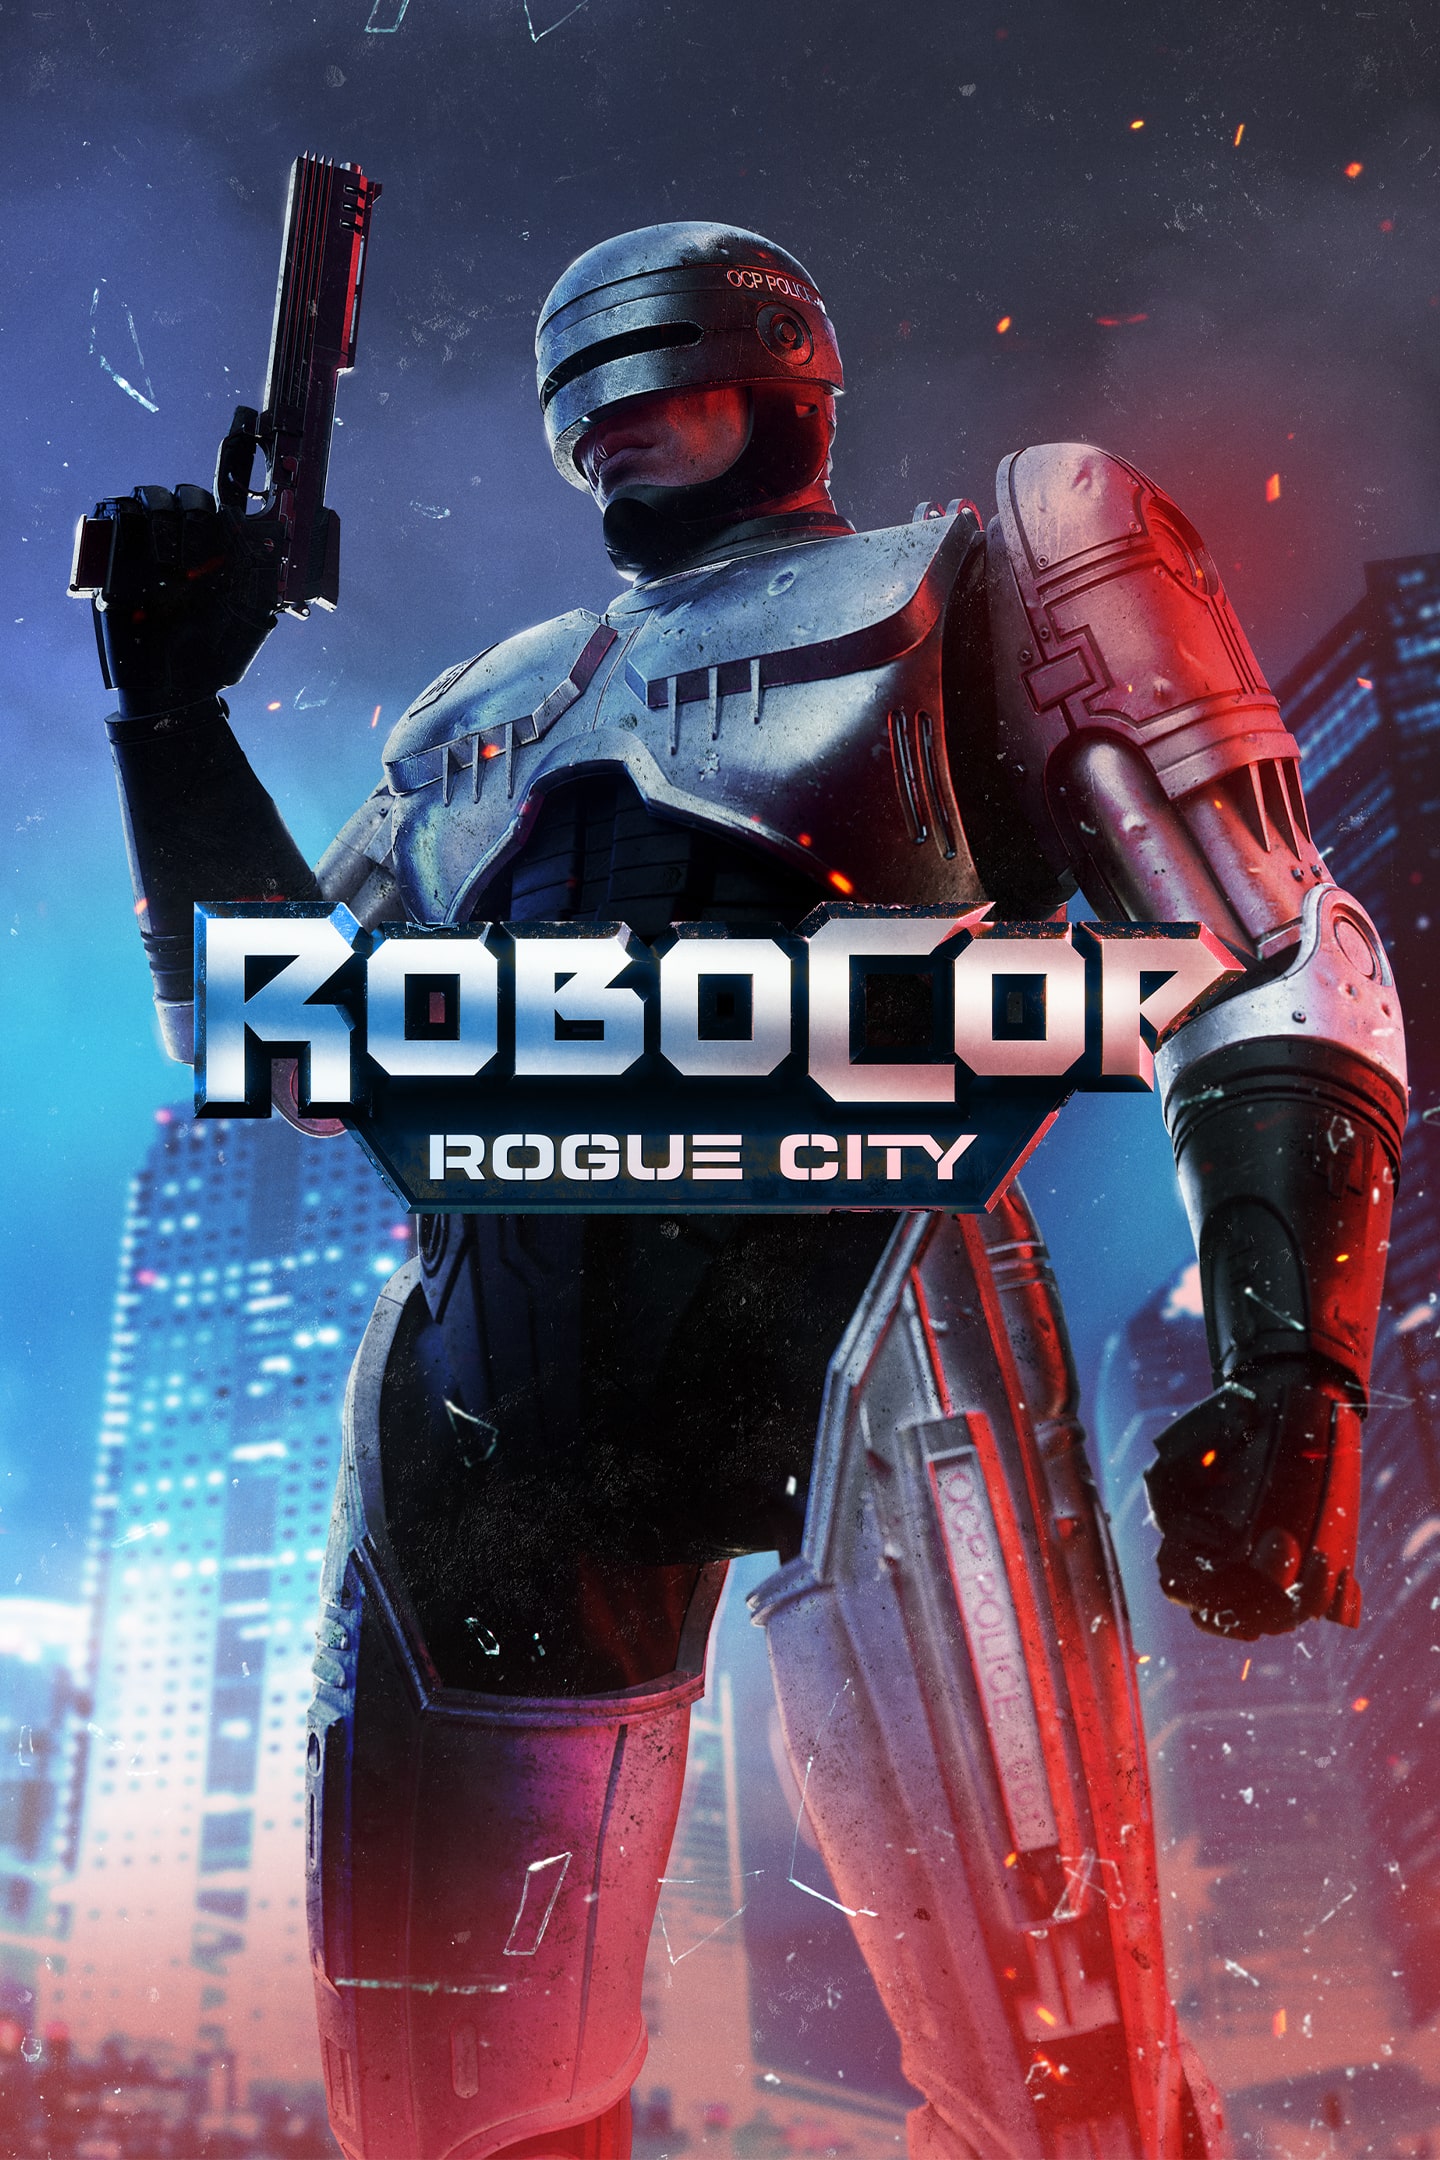 ▷ Chollo RoboCop: Rogue City para PS5 por sólo 33,99€ con envío